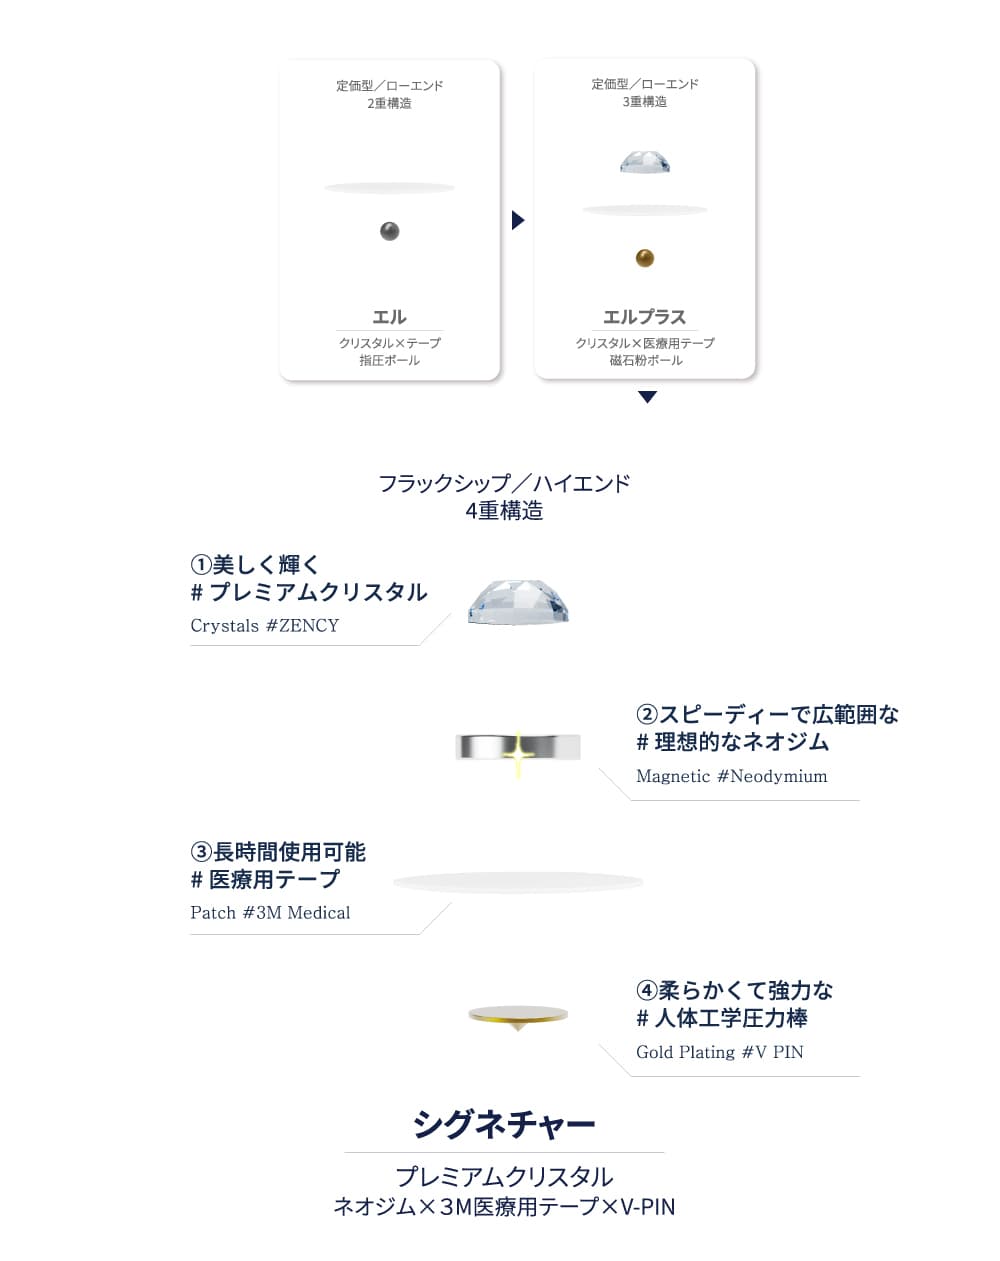 2295円 魅力の EAR COCO イヤーココ シグネチャー クリスタルシルバー 6パッチ 5シート入り 国内正規品 未開封品